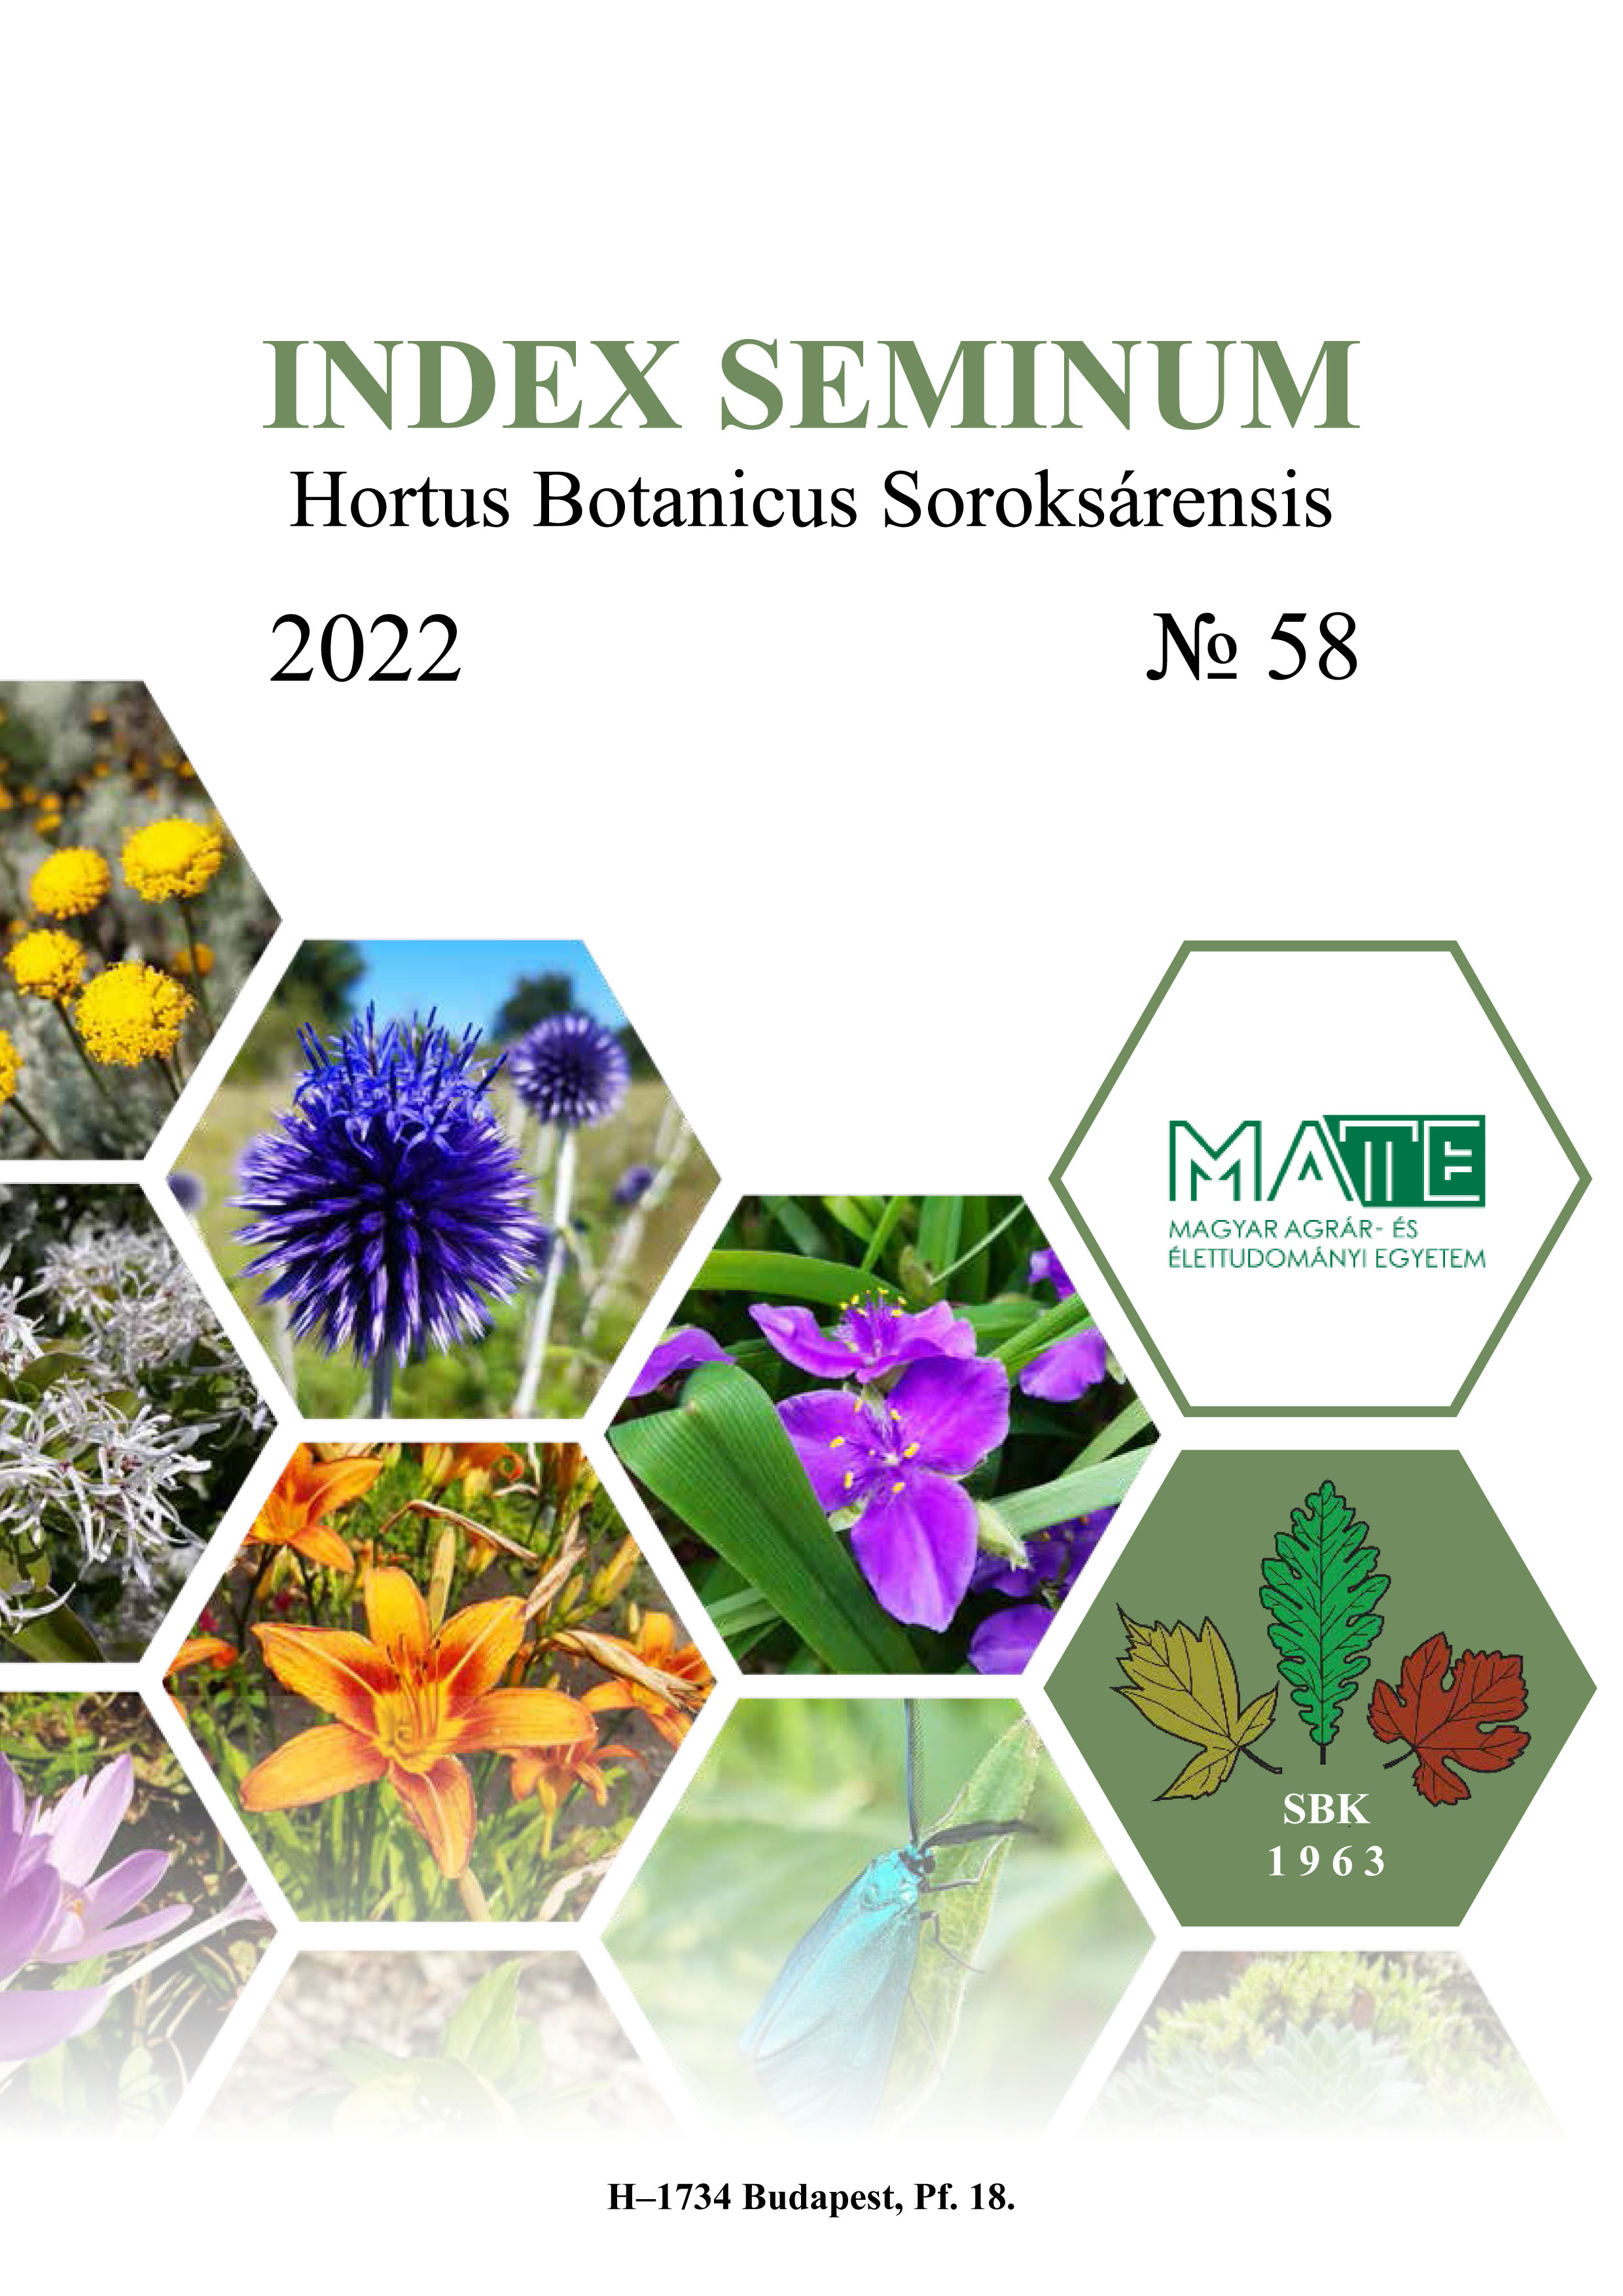 Index seminum SBK 2022